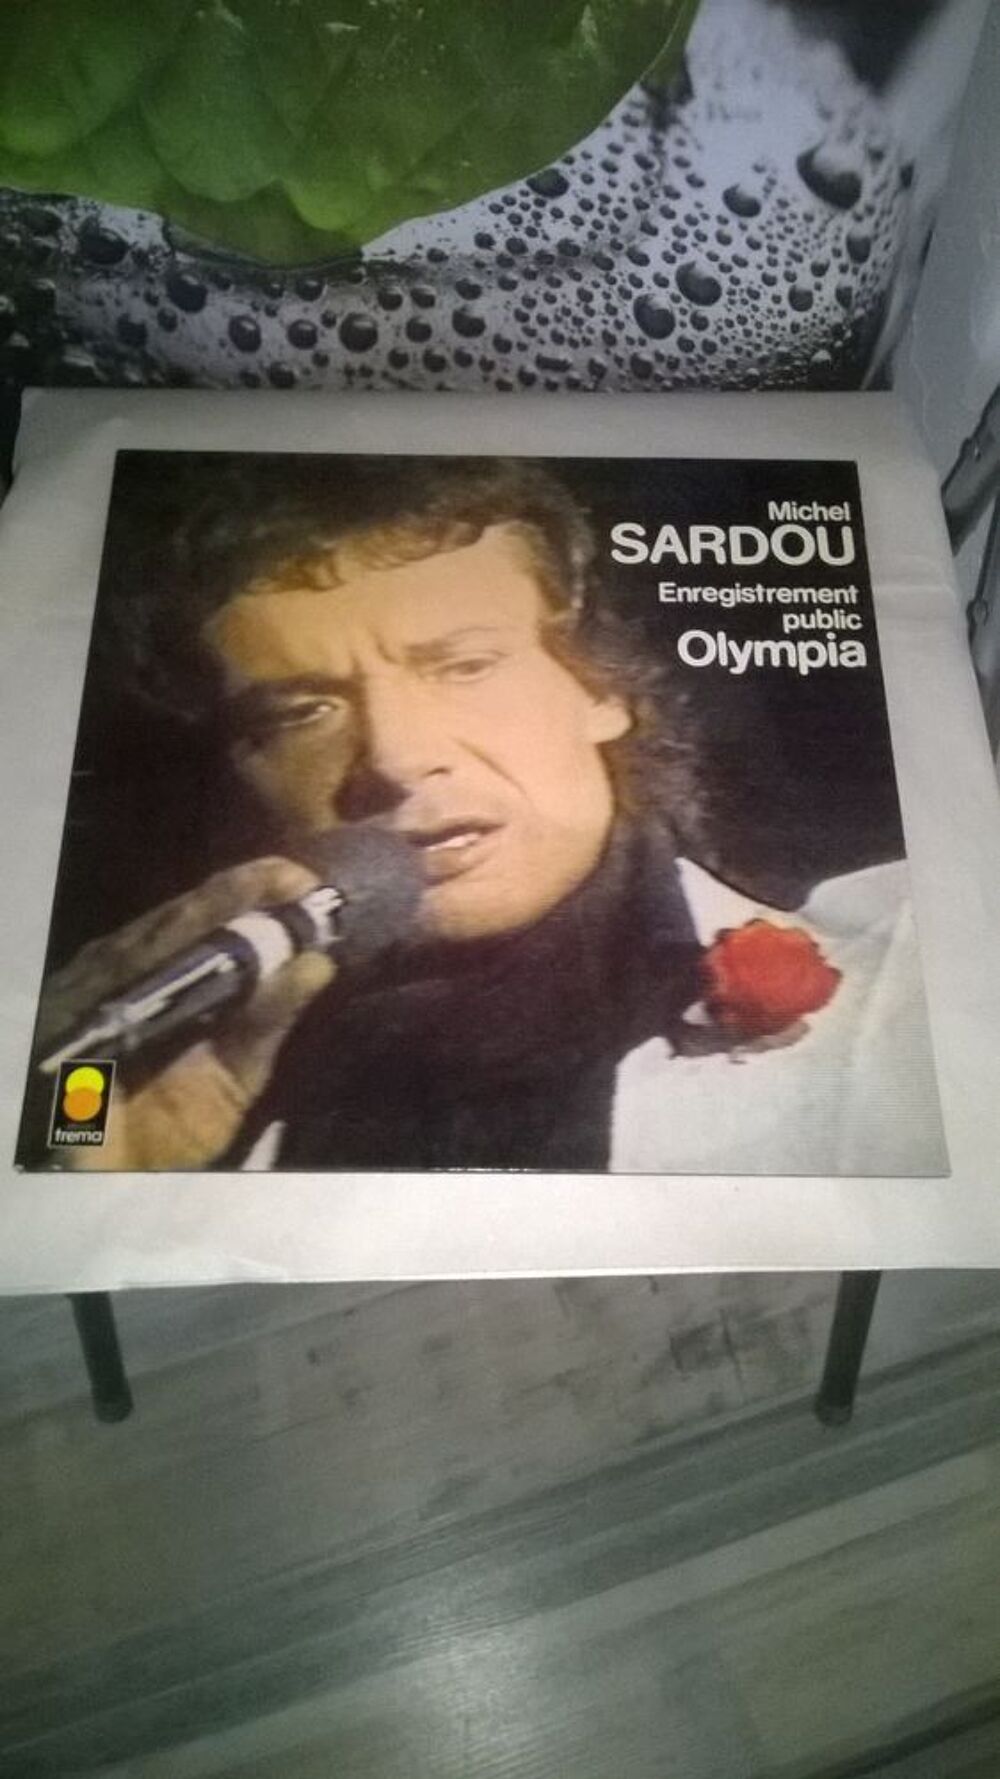 Vinyle Michel Sardou
Enregistrement public Olympia
1977
E CD et vinyles